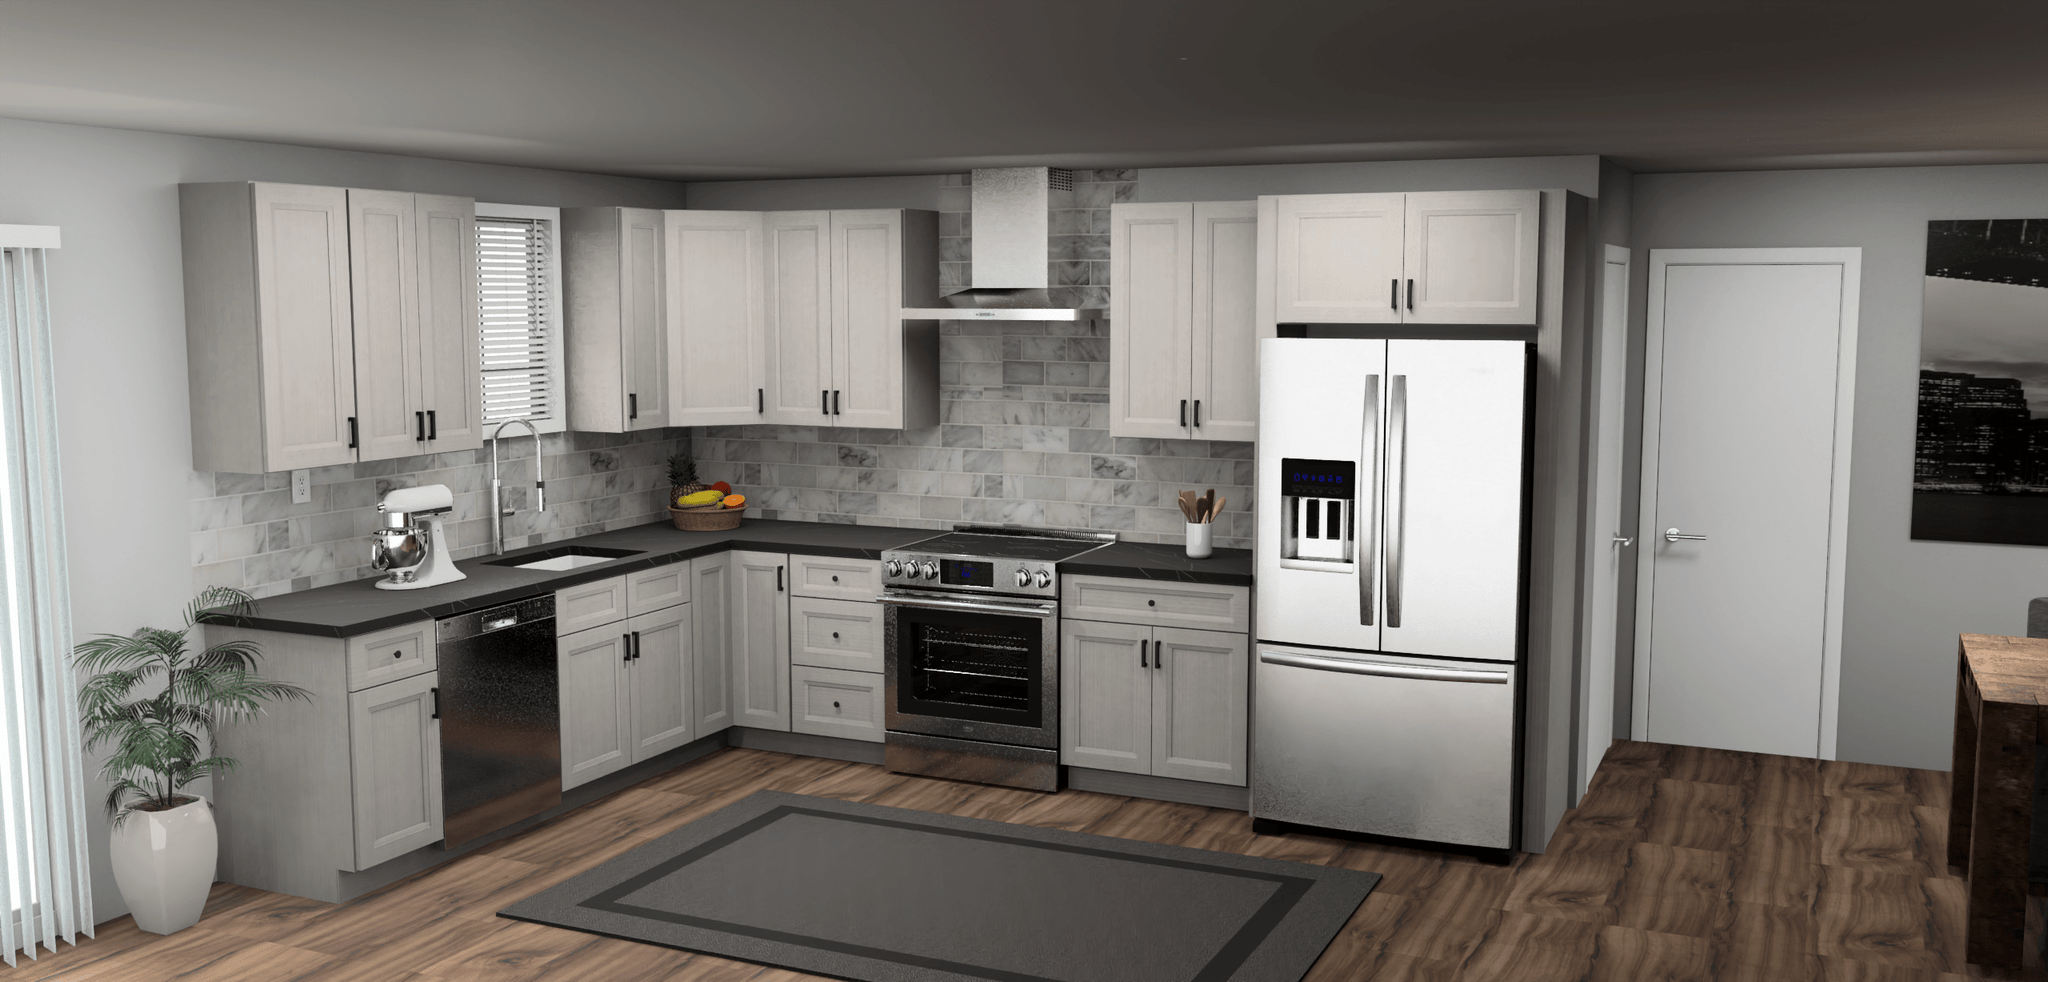 Fabuwood Allure Onyx Horizon 9 x 13 L Shaped Kitchen Main Layout Photo